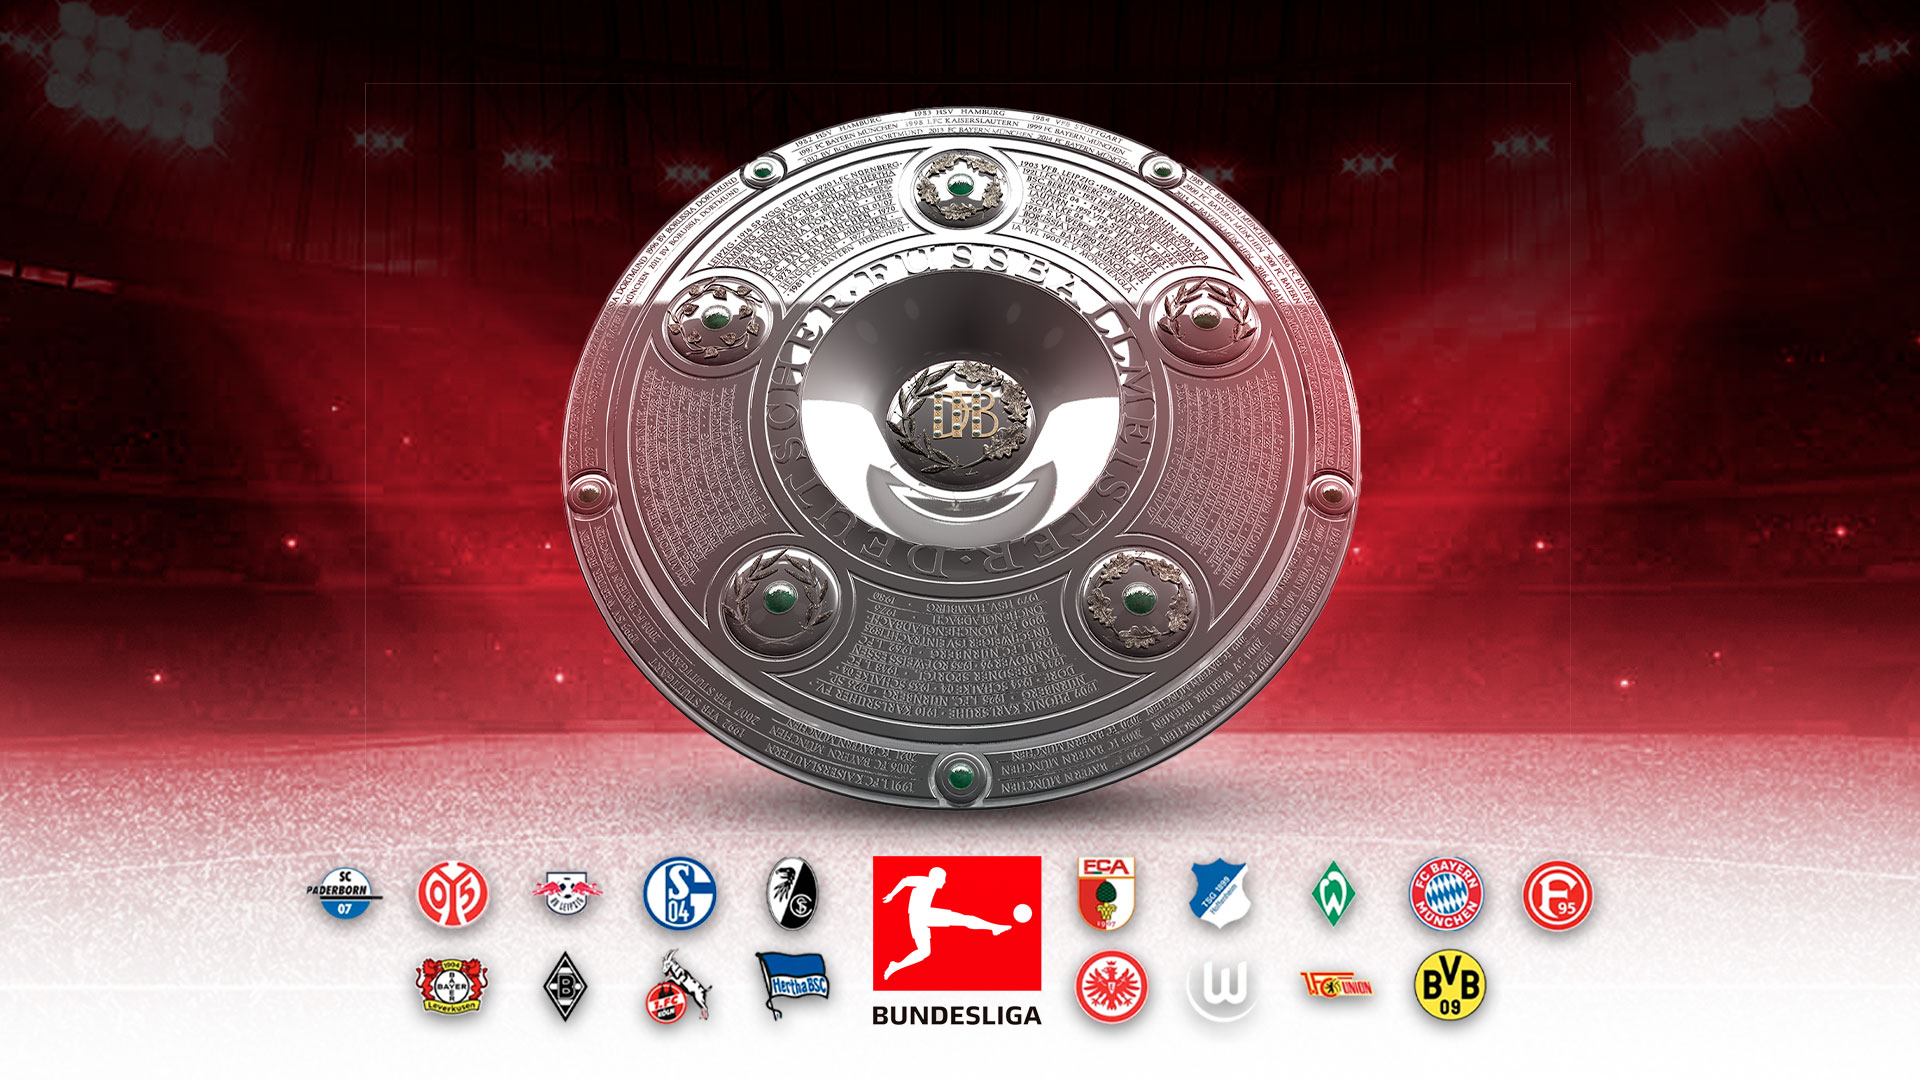 La Bundesliga está considerada como una de las mejores en el mundo. (Infobae)